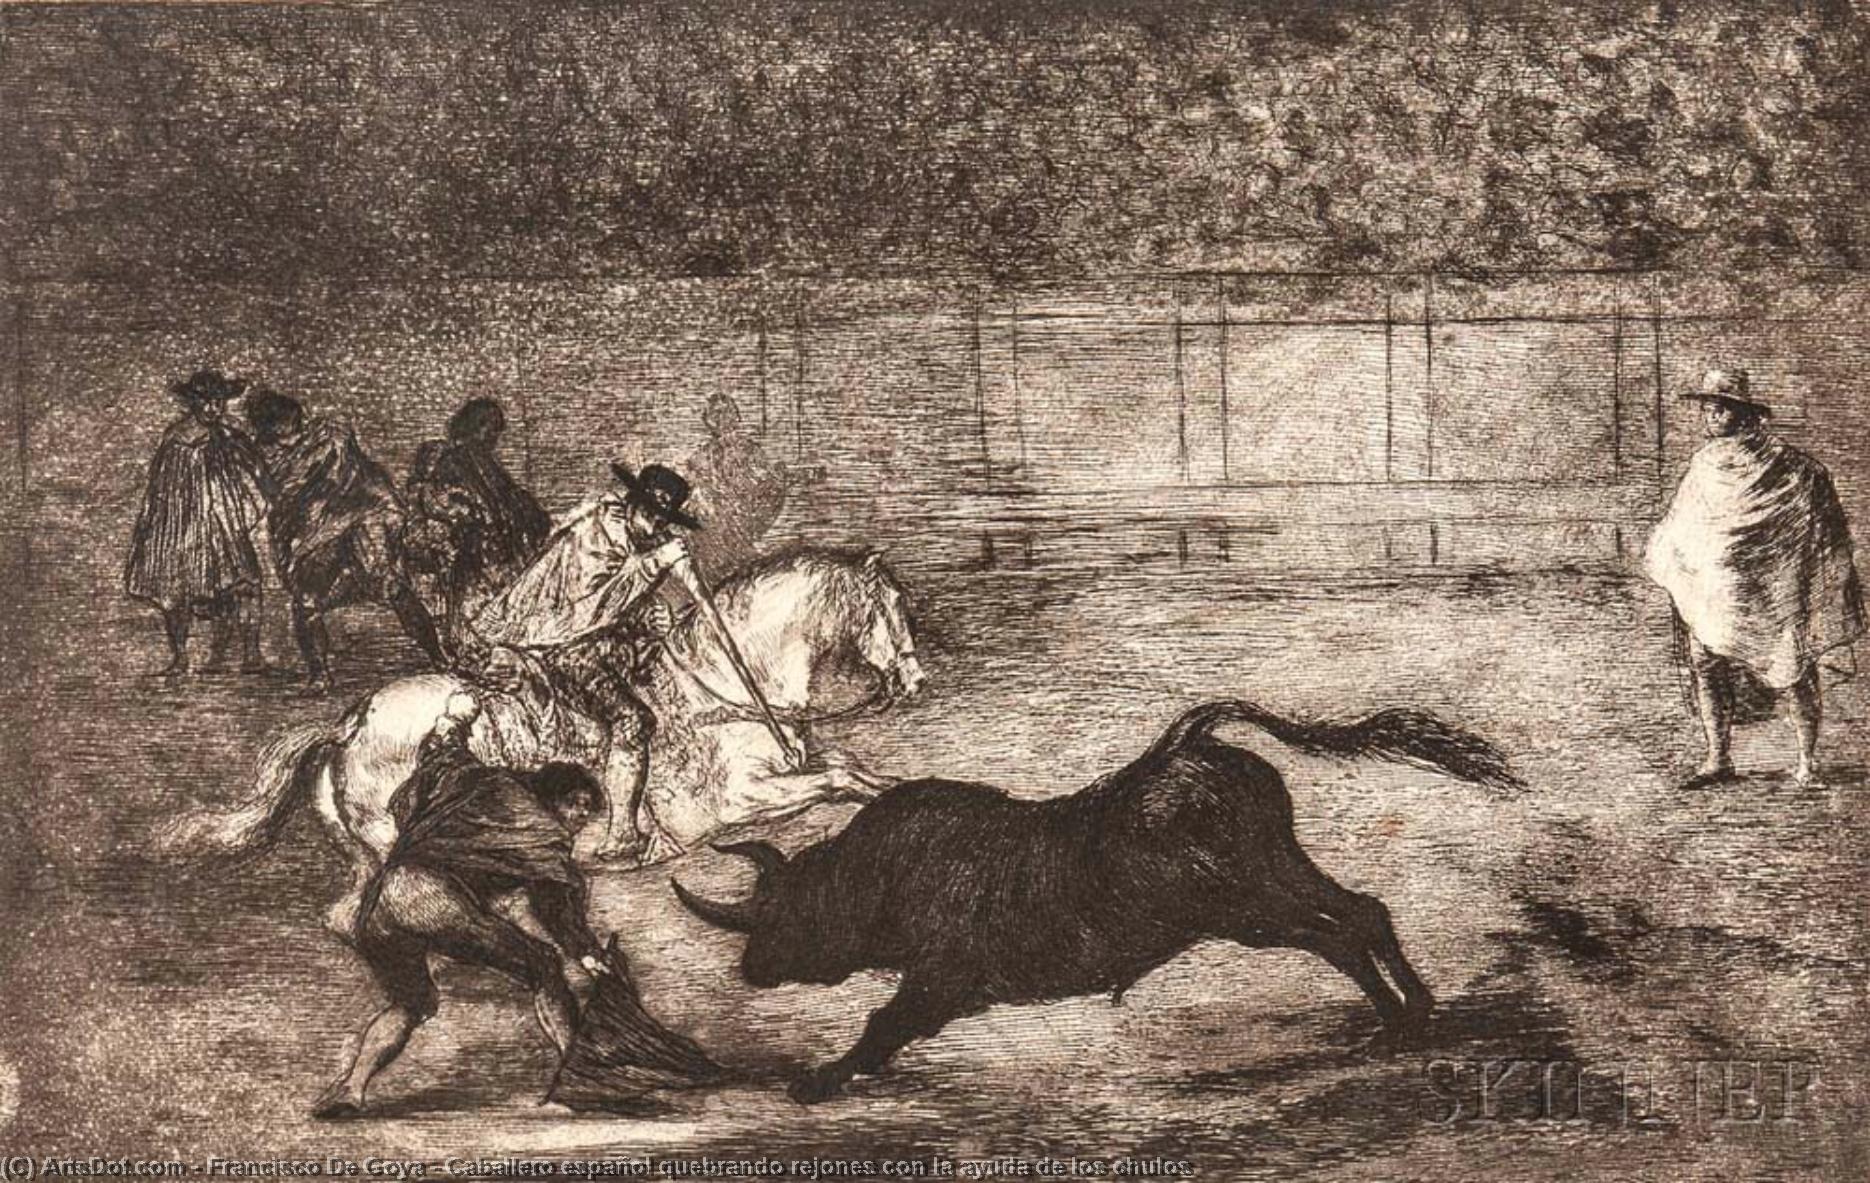 WikiOO.org - Encyclopedia of Fine Arts - Maleri, Artwork Francisco De Goya - Caballero español quebrando rejones con la ayuda de los chulos